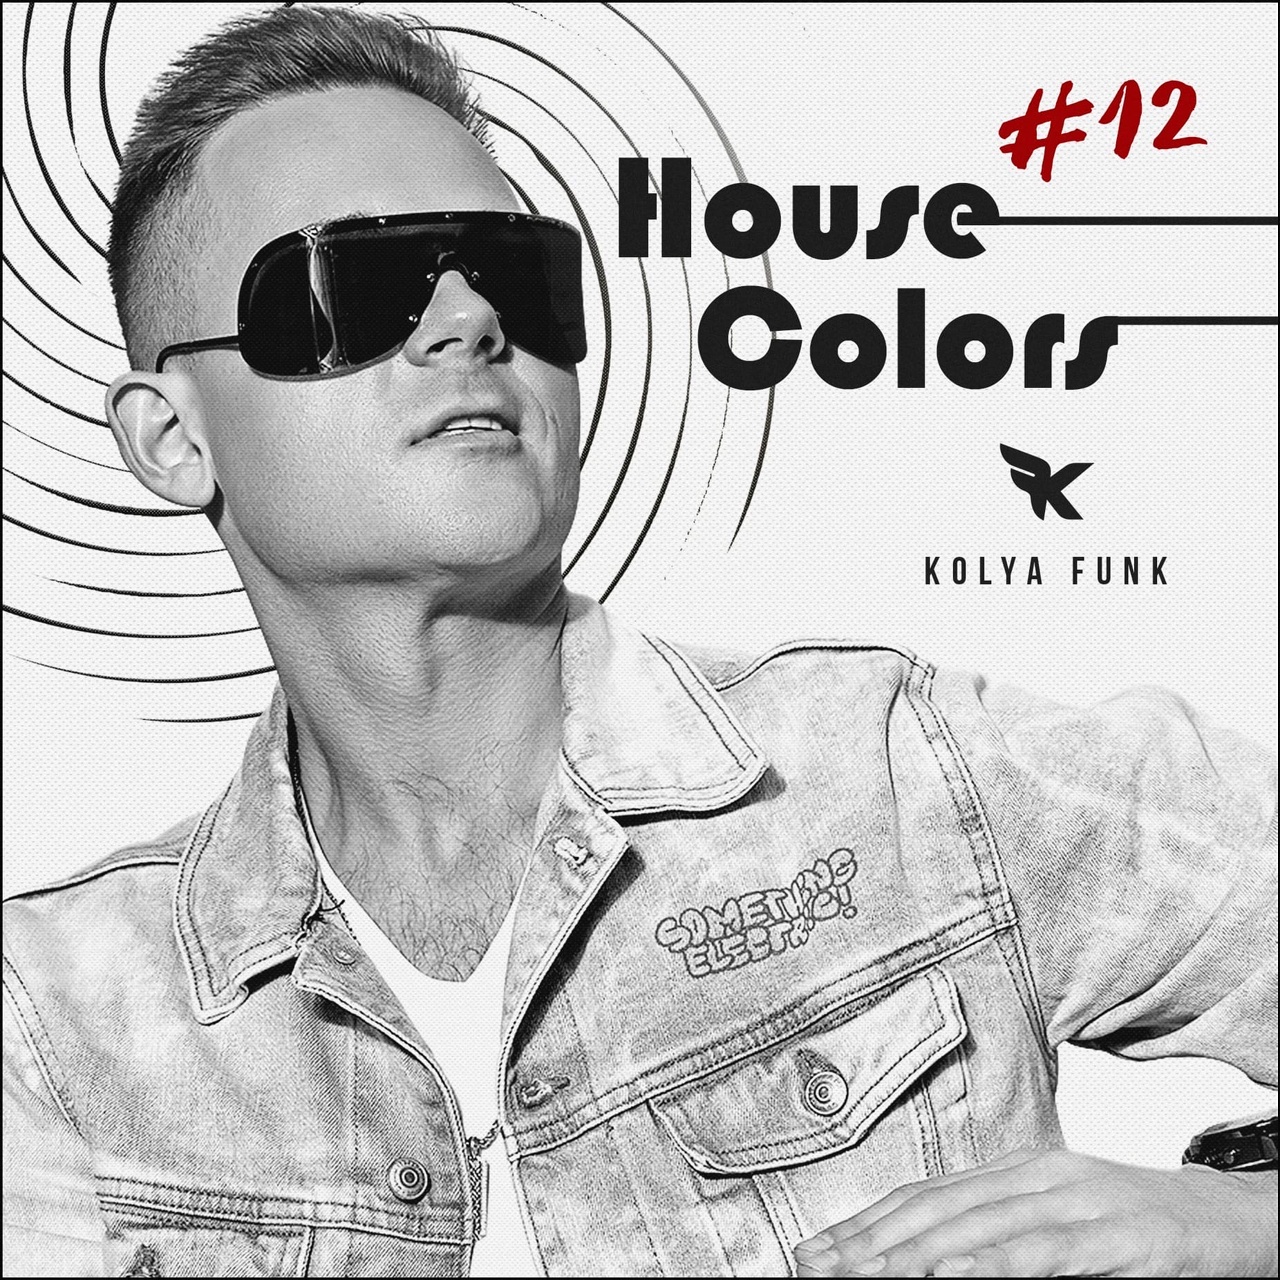 Descarca Kolya Funk - House Colors #012